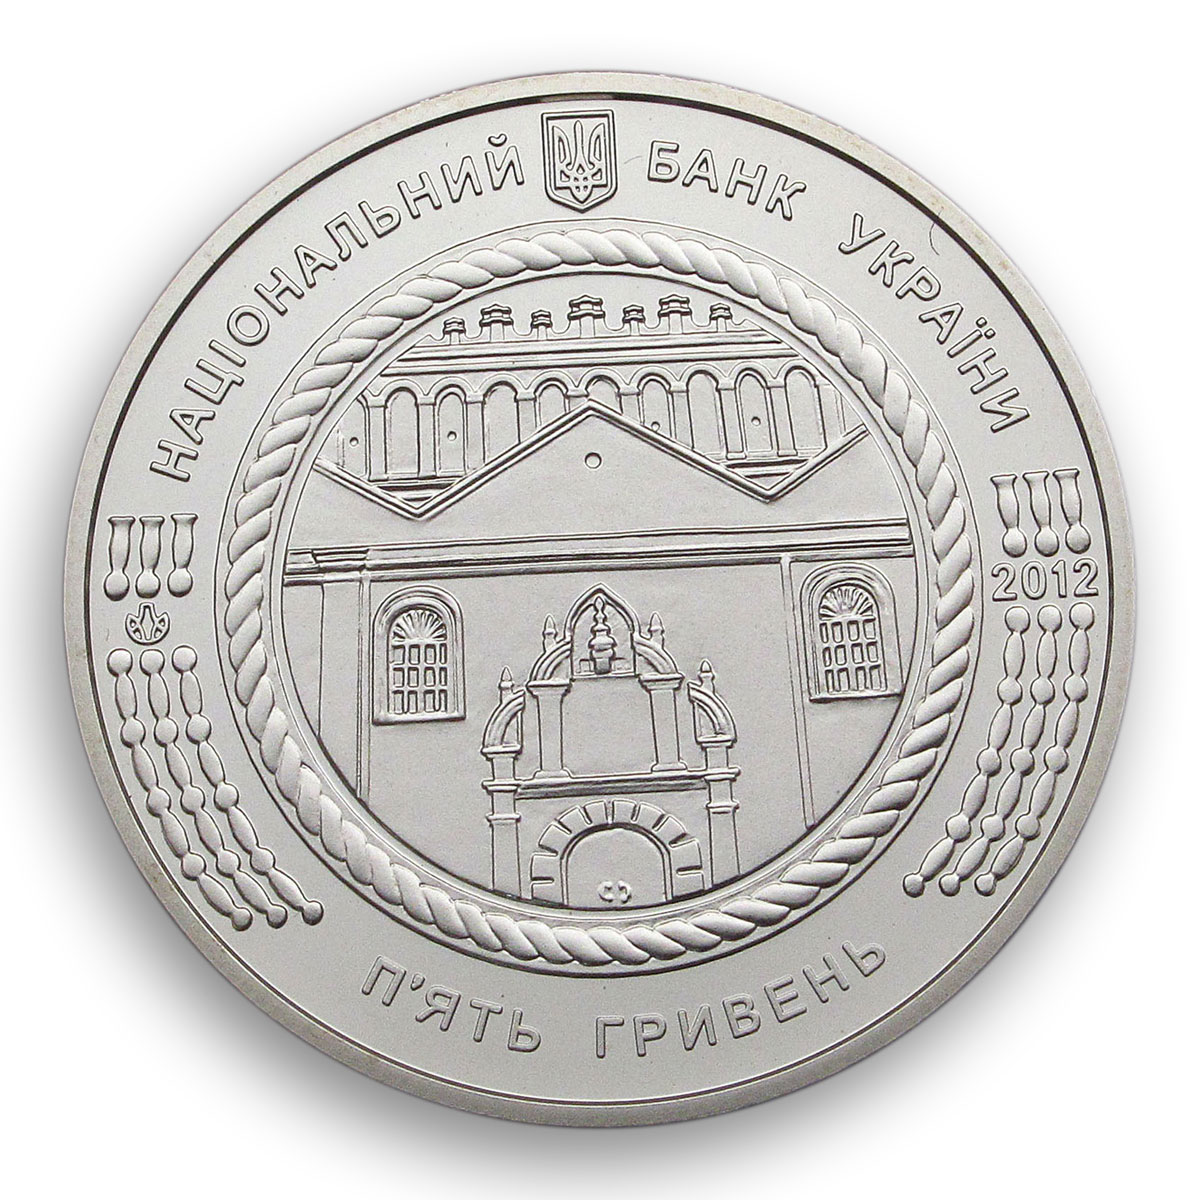 Ukraine 5 hryvnia Zhovkva Synagogue Renaissance architecture nickel coin 2012